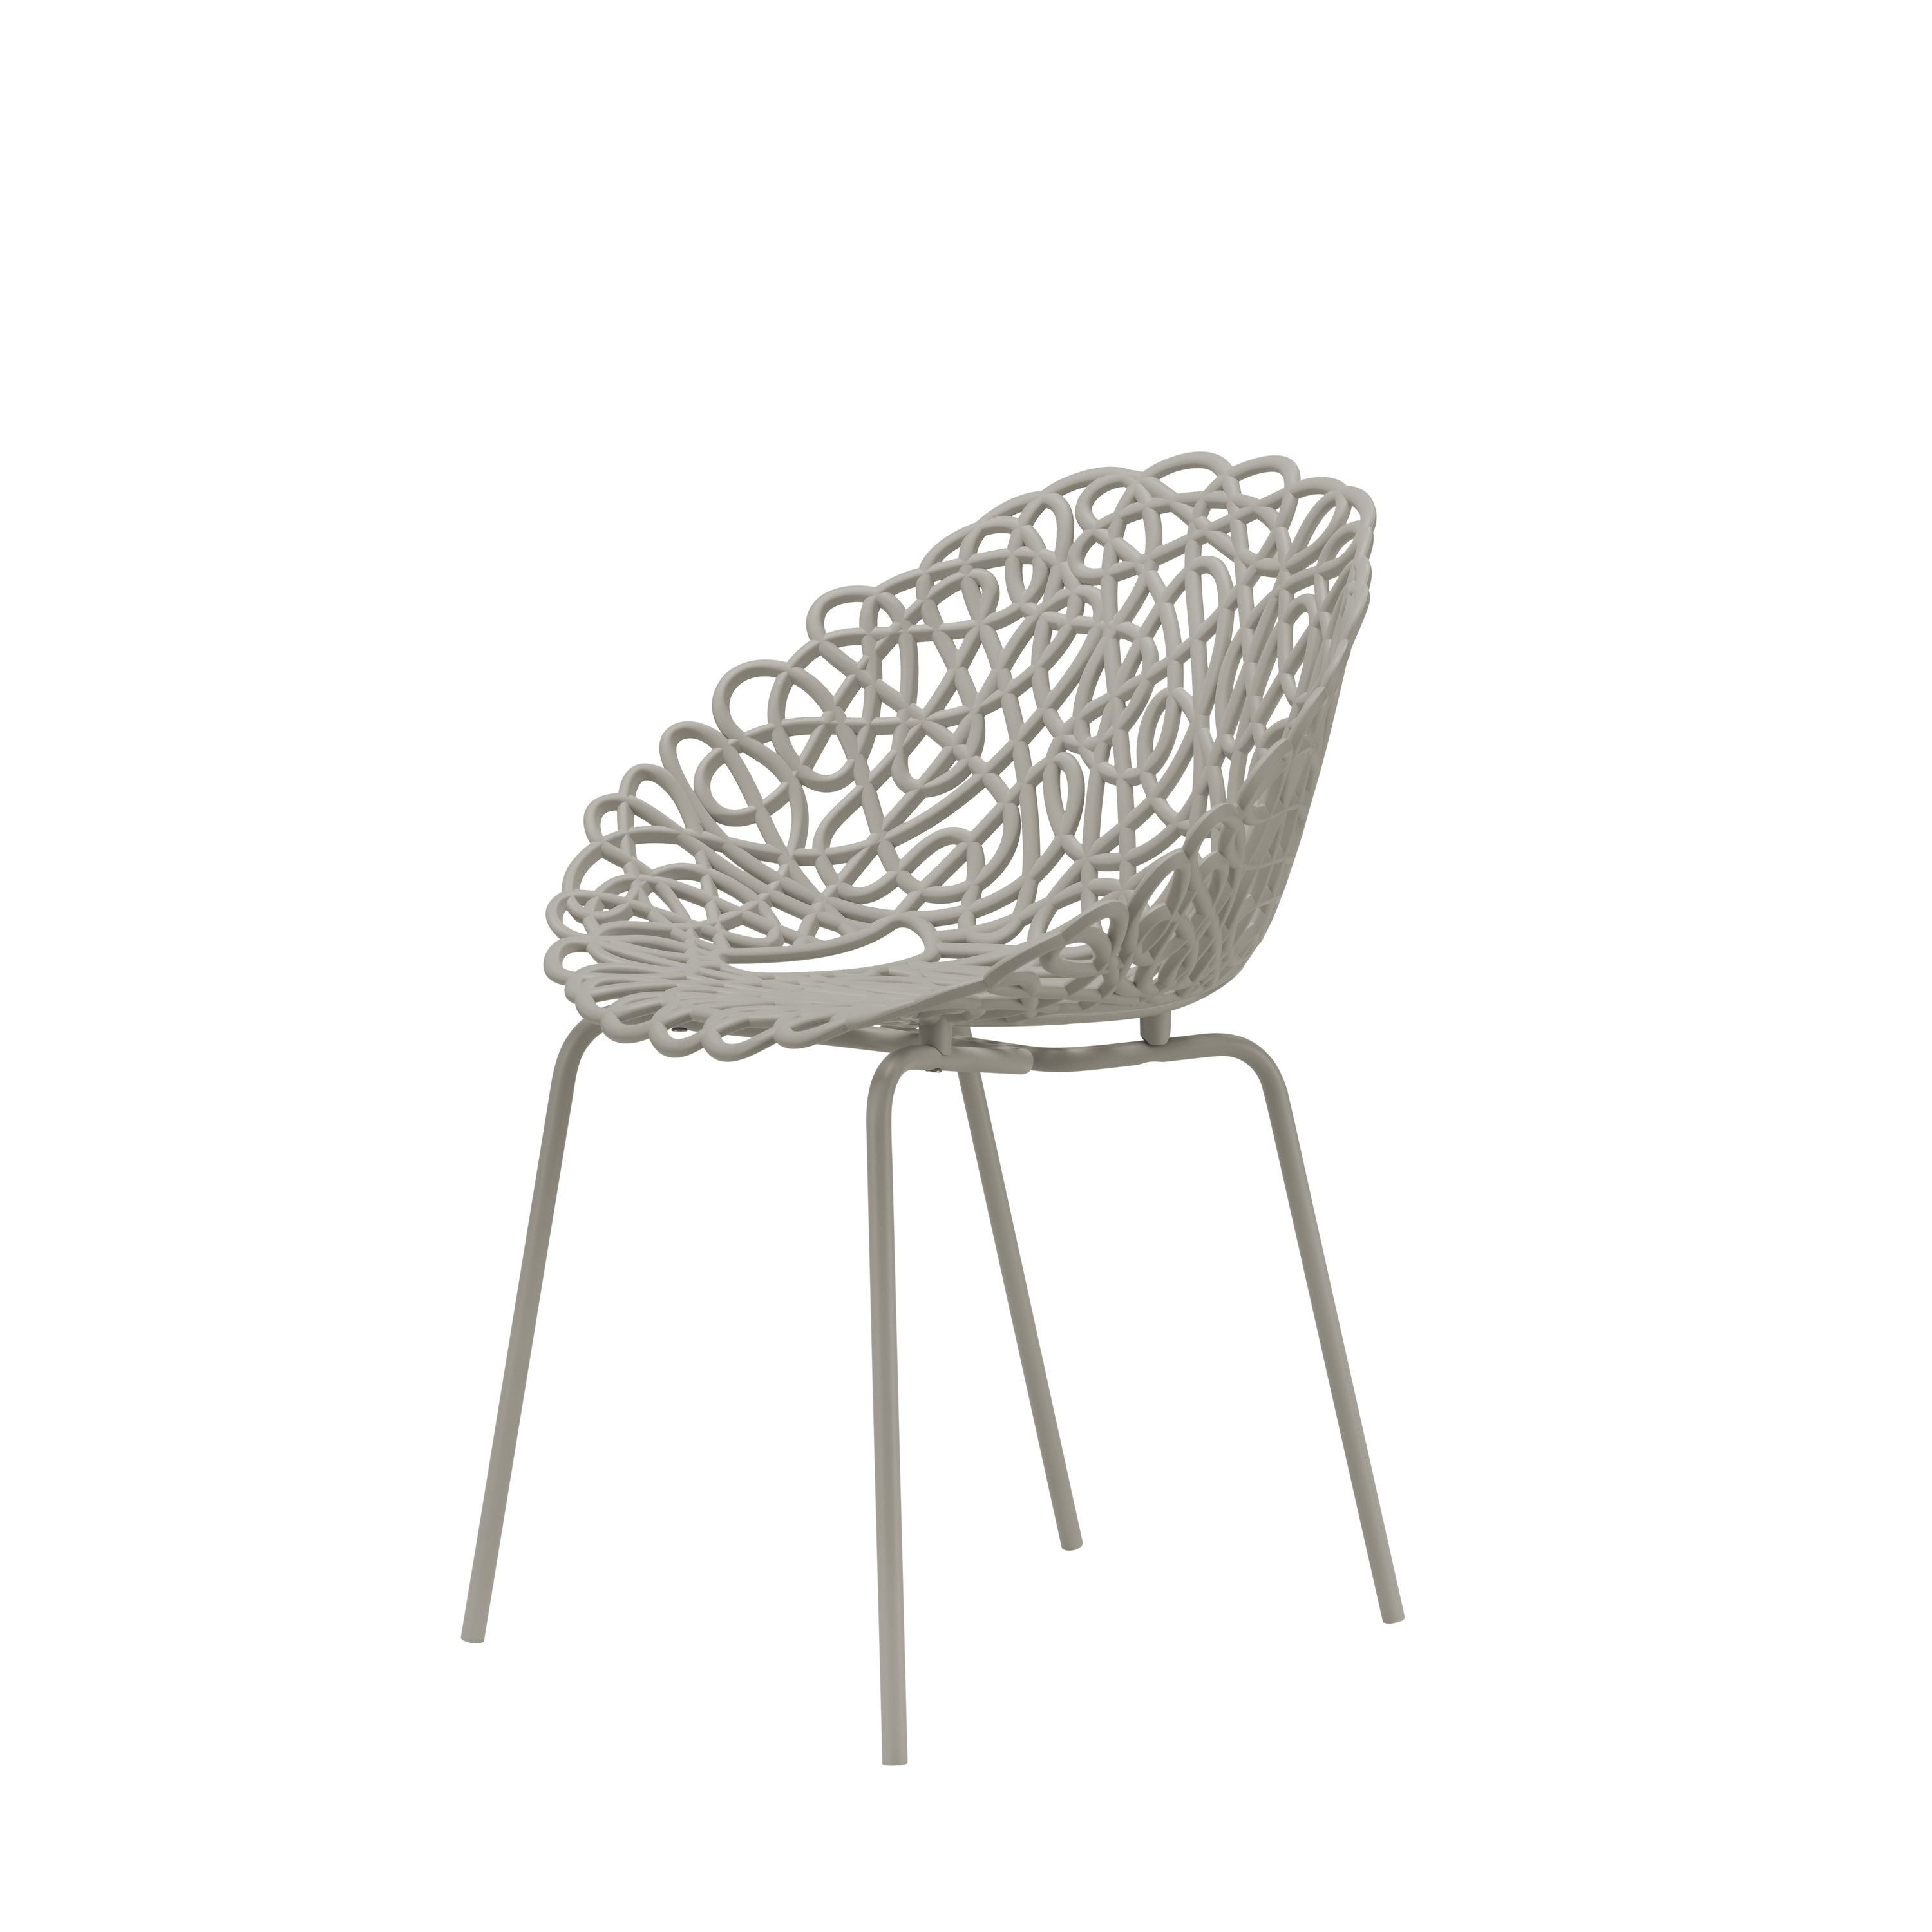 Qeeboo Bacana Chair Indoor Set Of 2 Pcs, Dove Grey